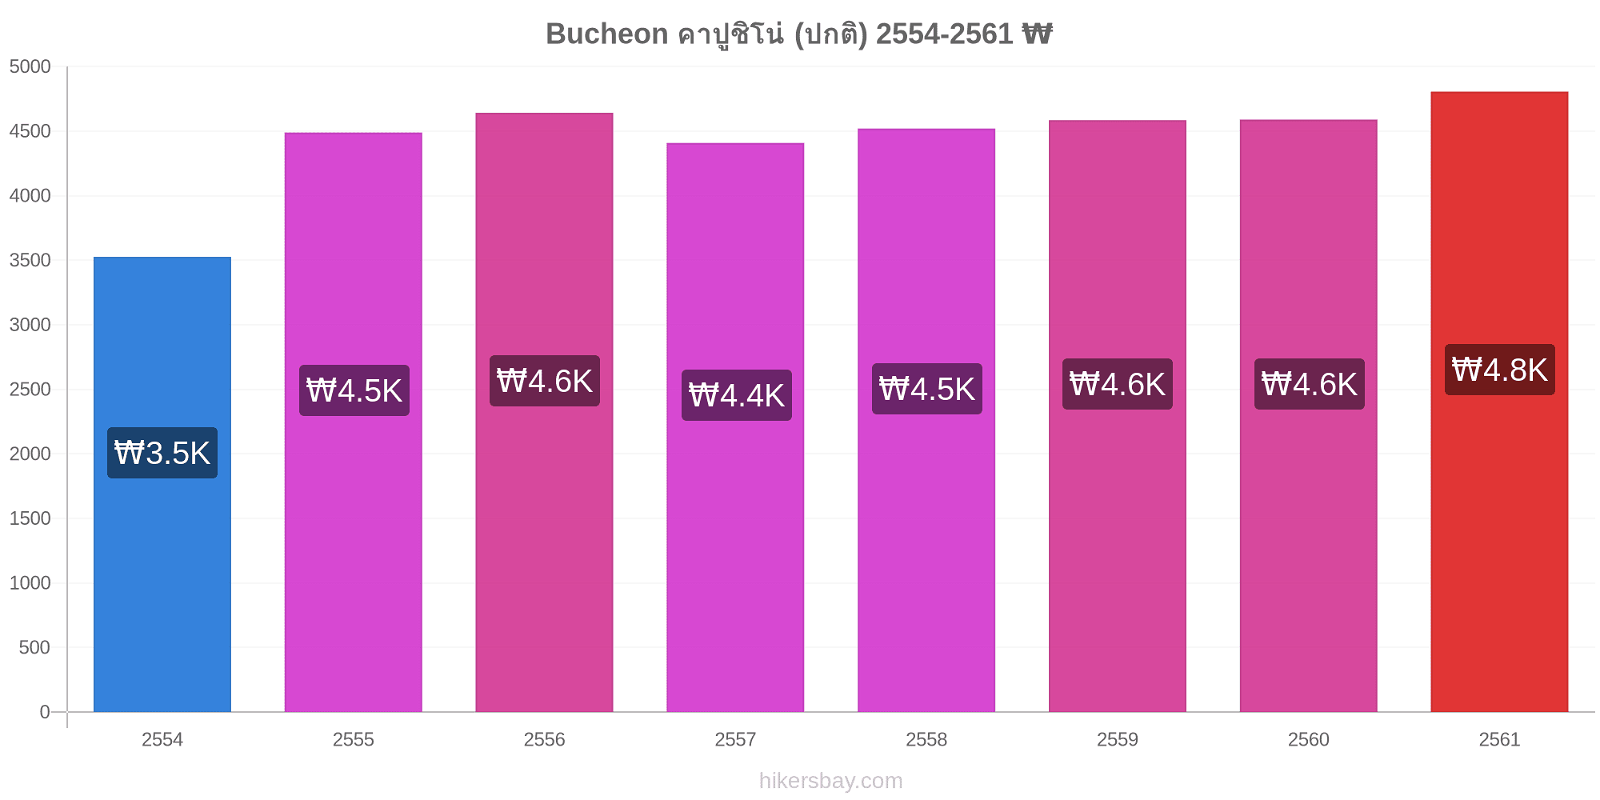 Bucheon การเปลี่ยนแปลงราคา คาปูชิโน่ (ปกติ) hikersbay.com